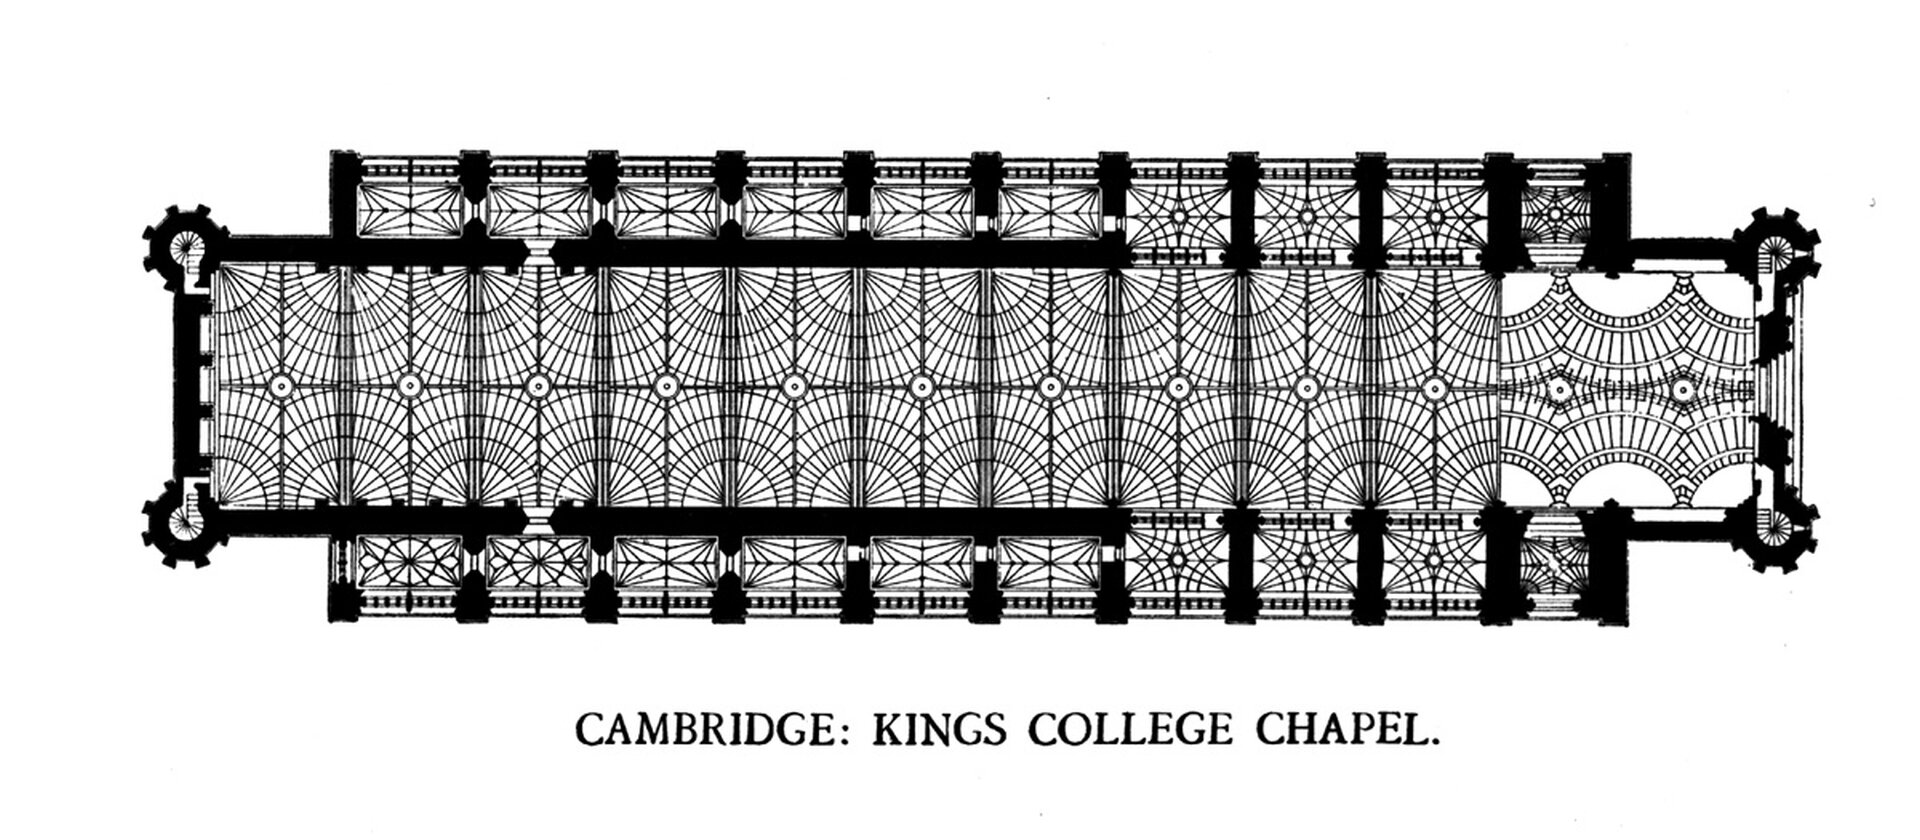 Ilustracja interaktywna o kształcie poziomego prostokąta przedstawia plan kaplicy w Królewskim Kolegium, Cambridge. Plan katedry jest w kształcie prostokąta. Jest dwuosiowy. Prezbiterium zamknięte jest prosto. Na planie oznaczony został podział na przęsła oraz rysunek sklepienia. 